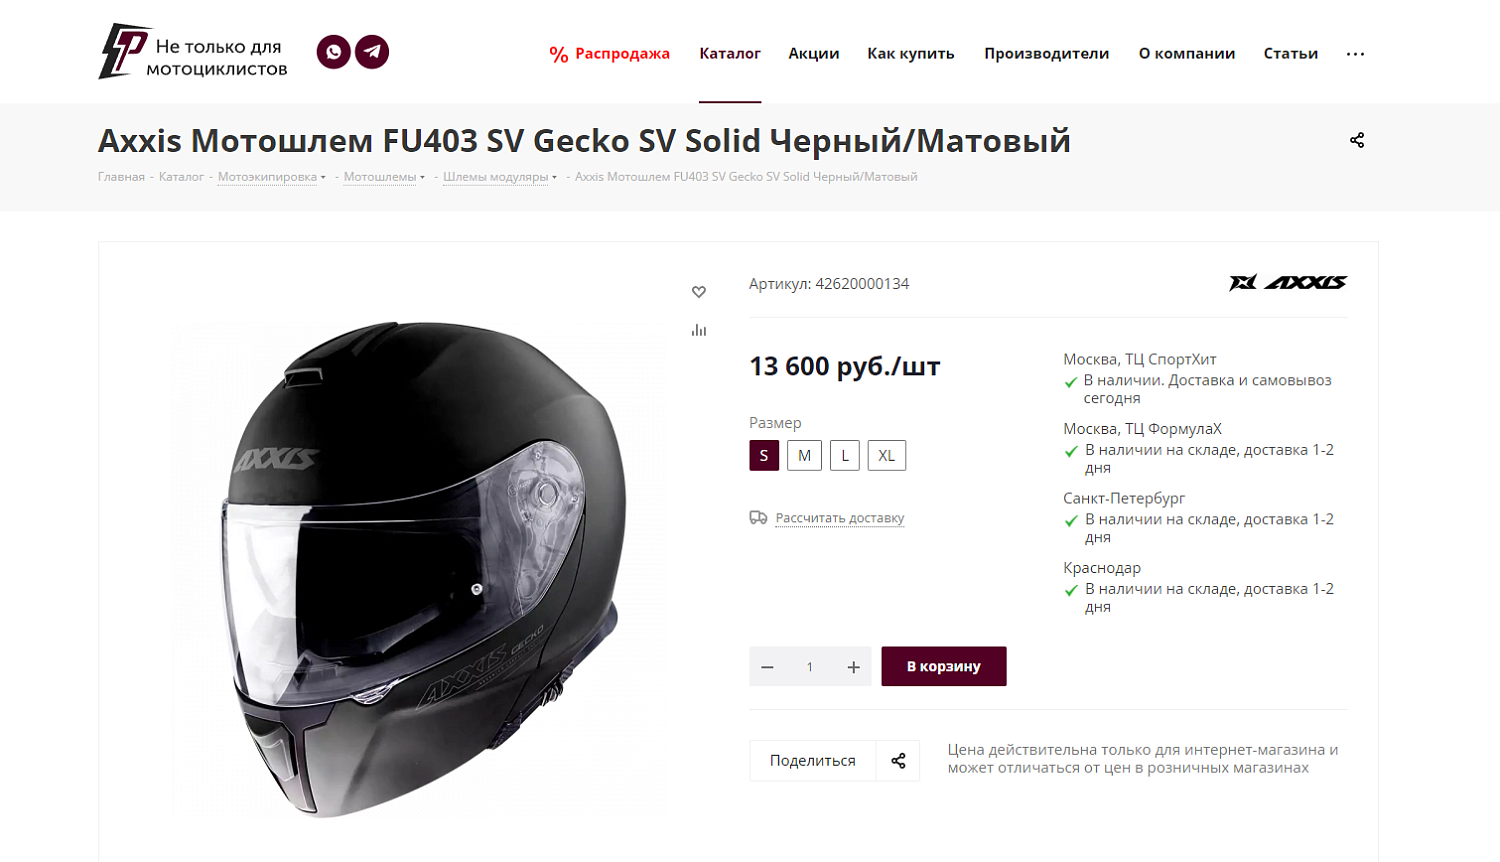 Pro-Ekip.ru — интернет-магазин экипировки для мотоциклов